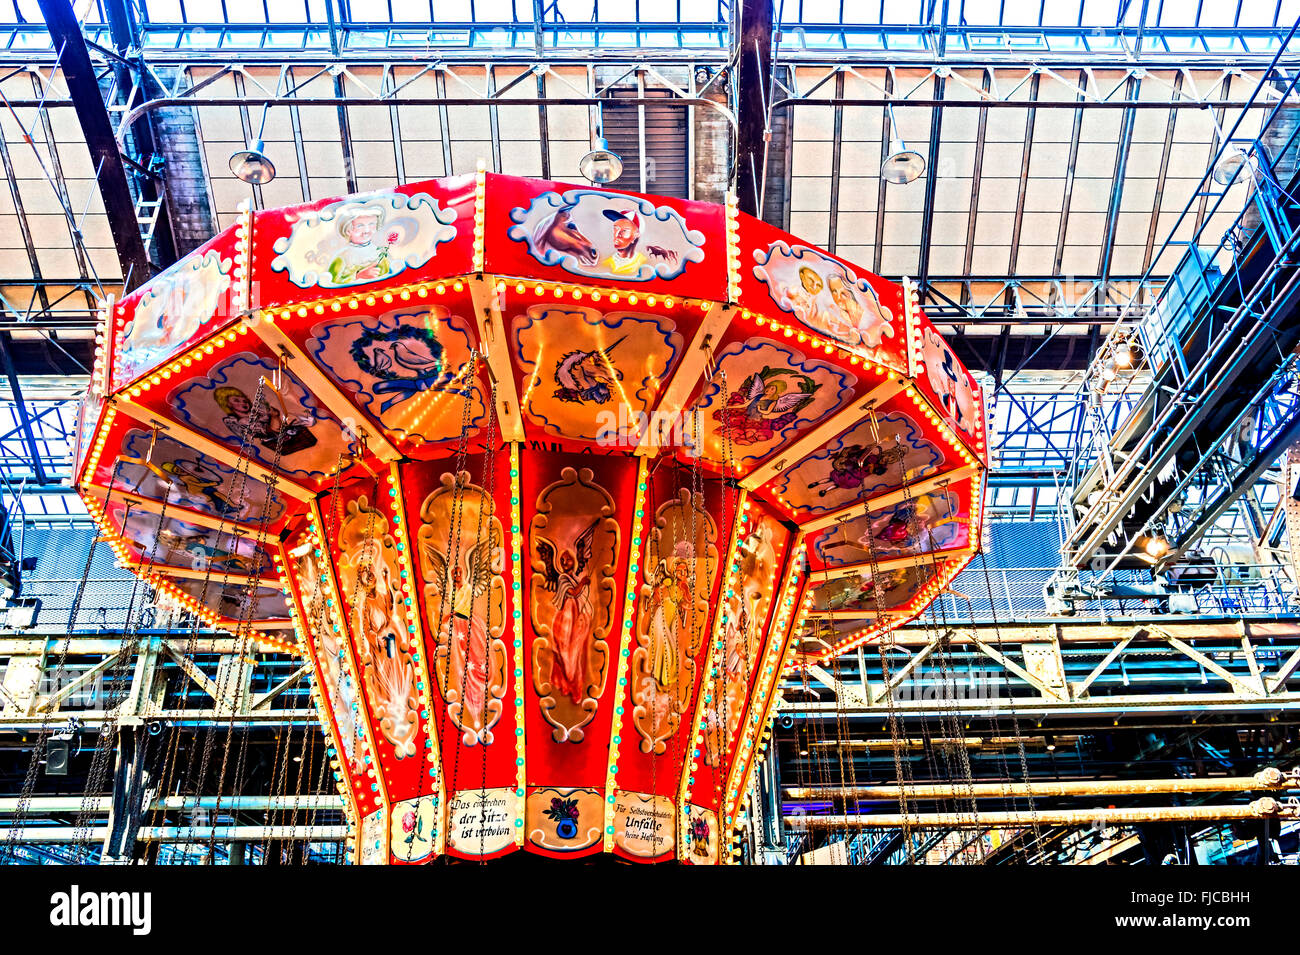 merry-go-round  at a historic Fun fair in Germany; Karussell auf einem historischen Jahrmarkt Stock Photo